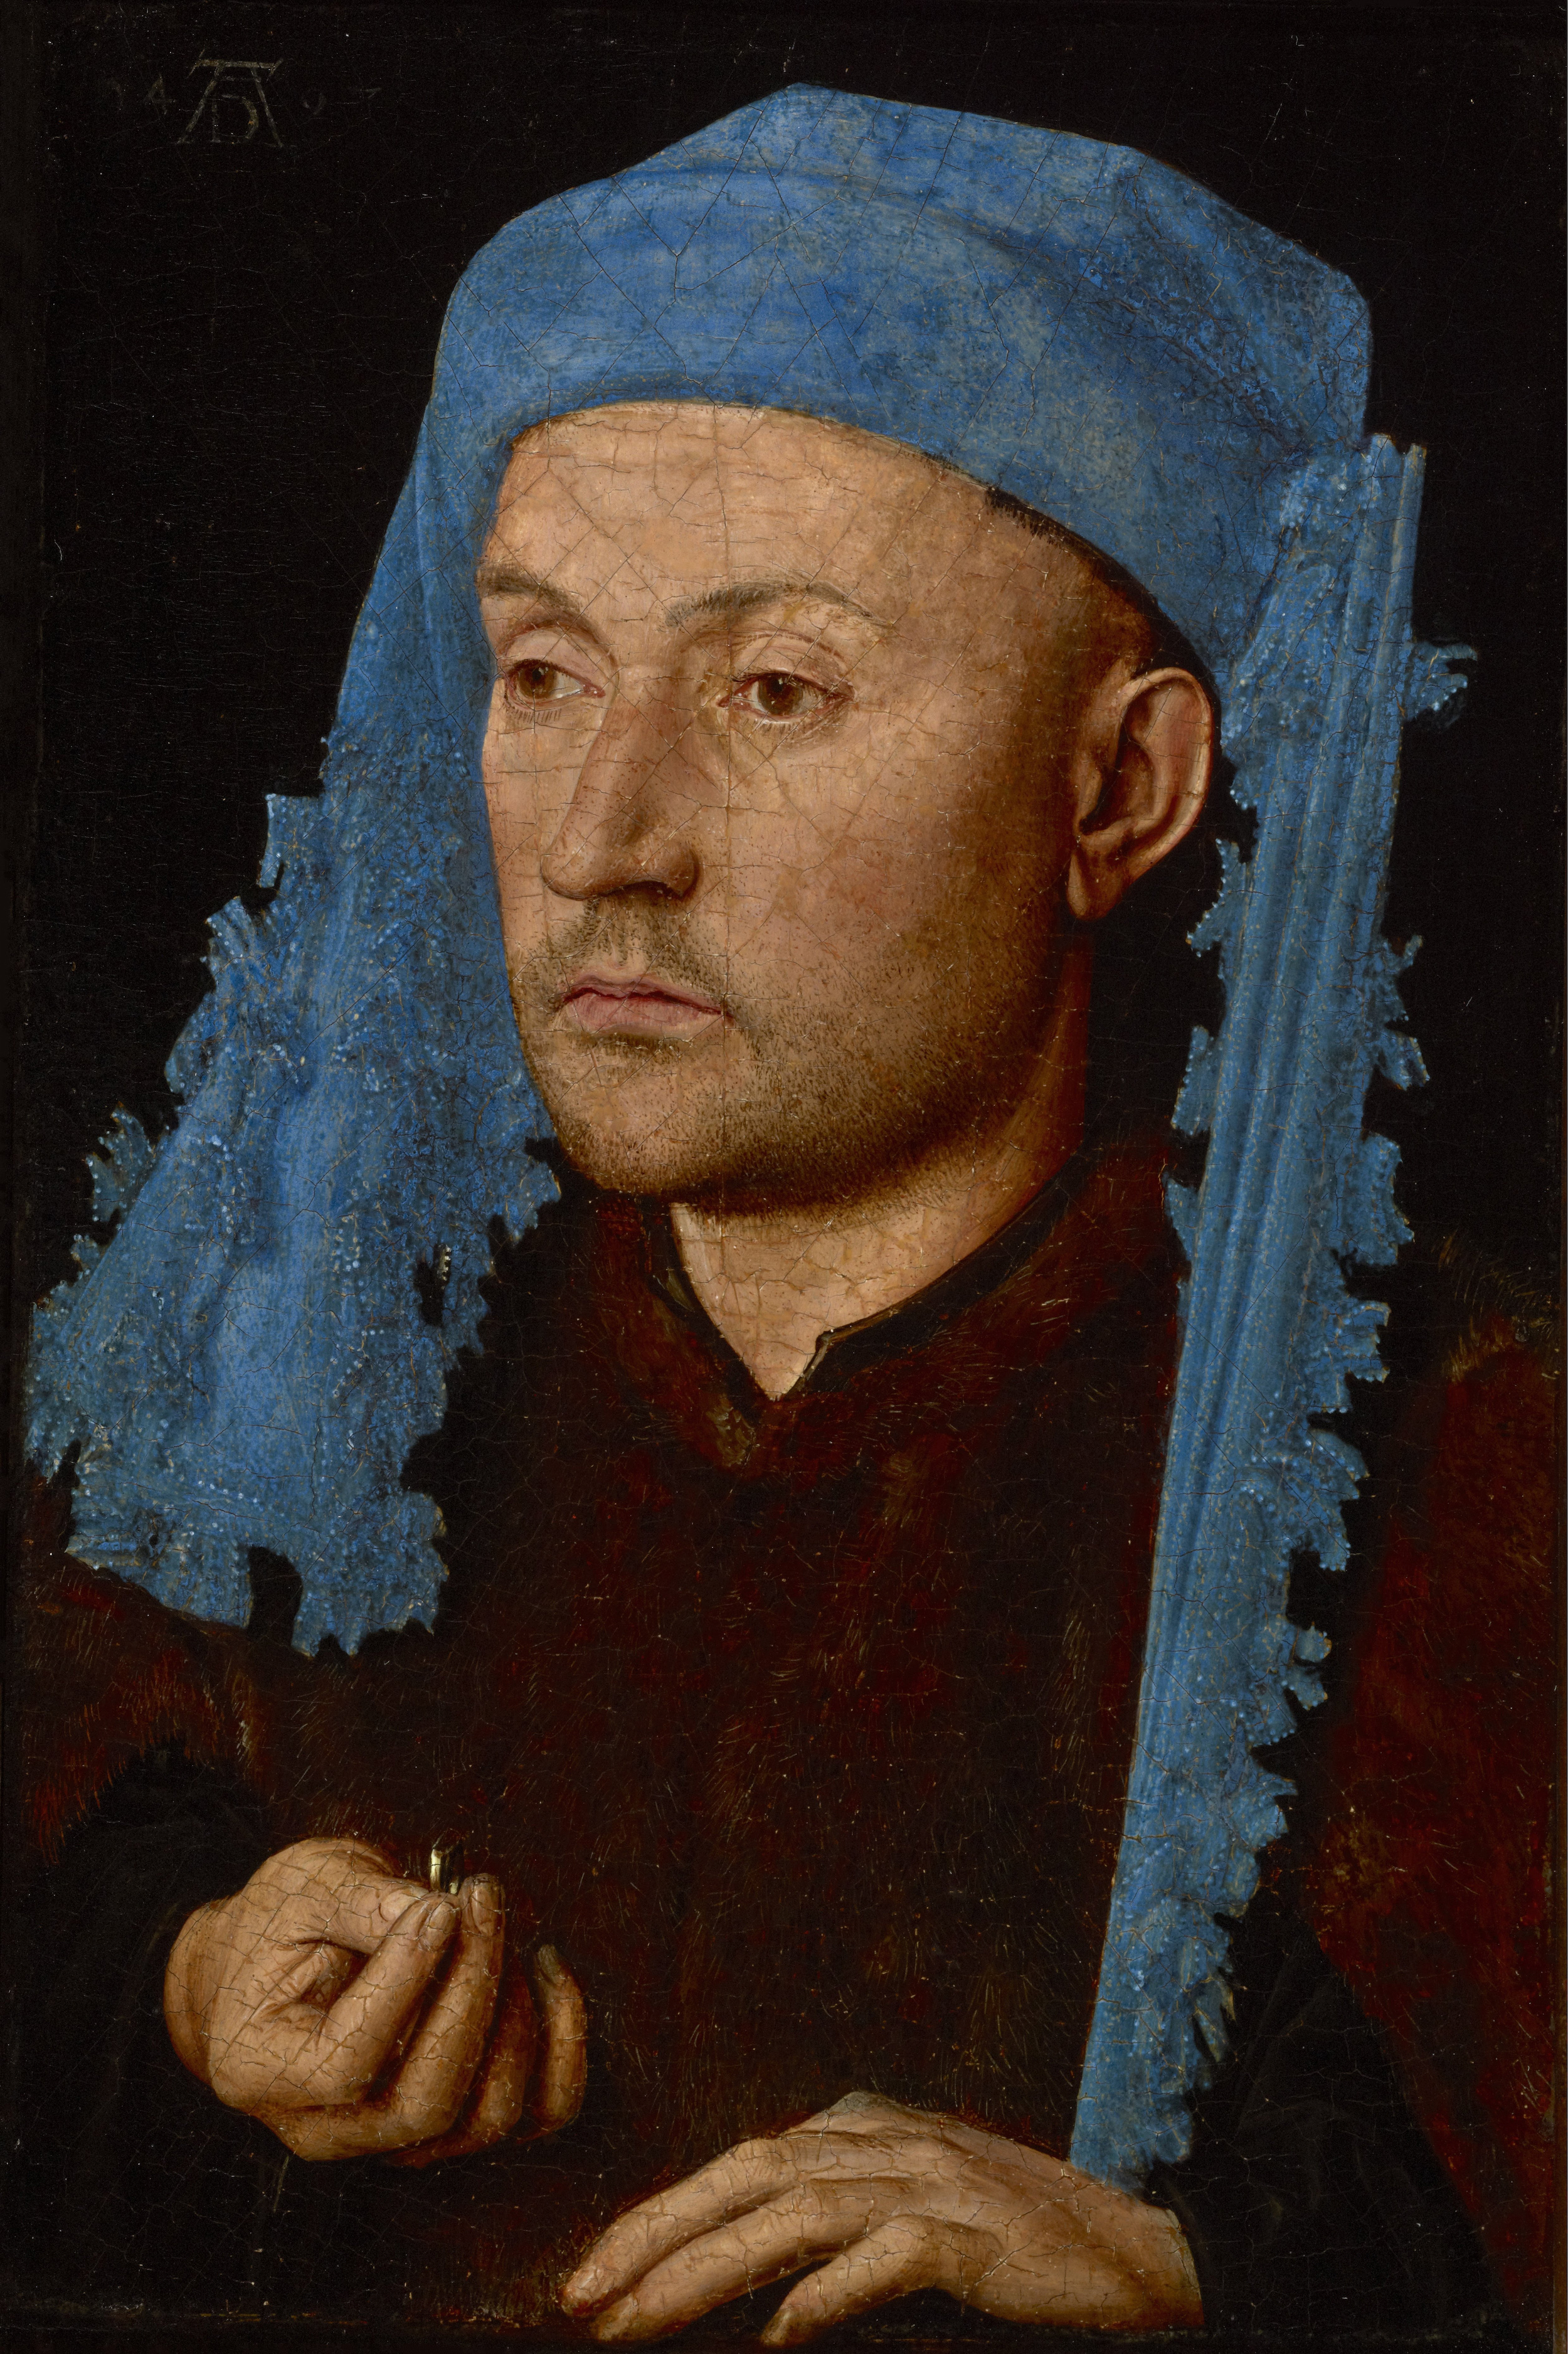 L’homme au chaperon bleu by Jan van Eyck - c. 1430 Muzeul Național Brukenthal